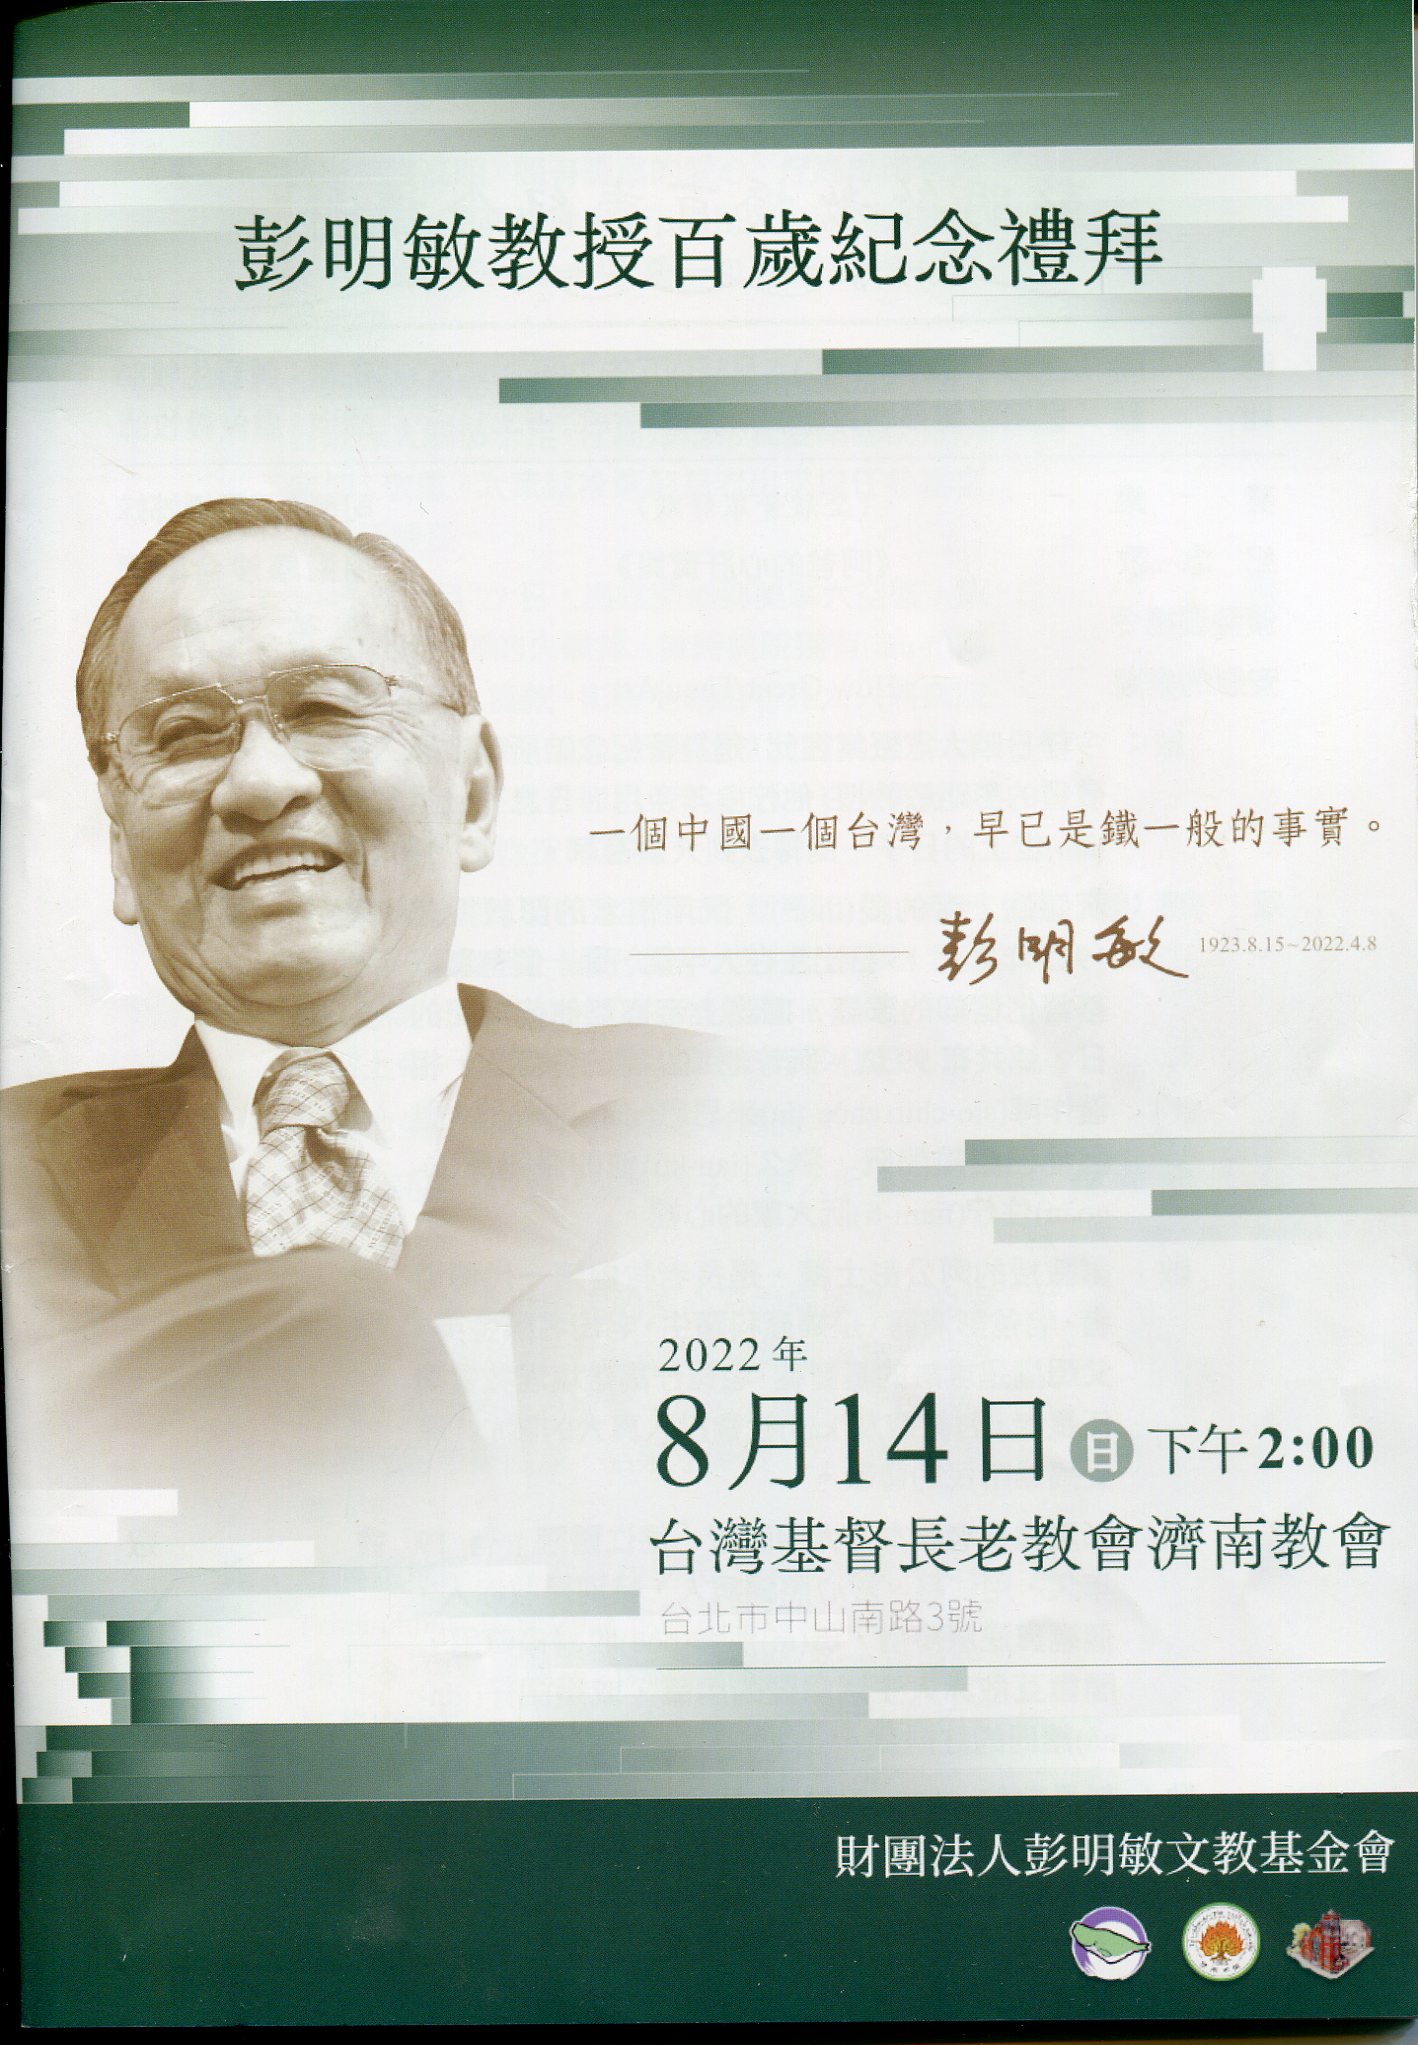 彭明敏教授 百歲紀念禮拜